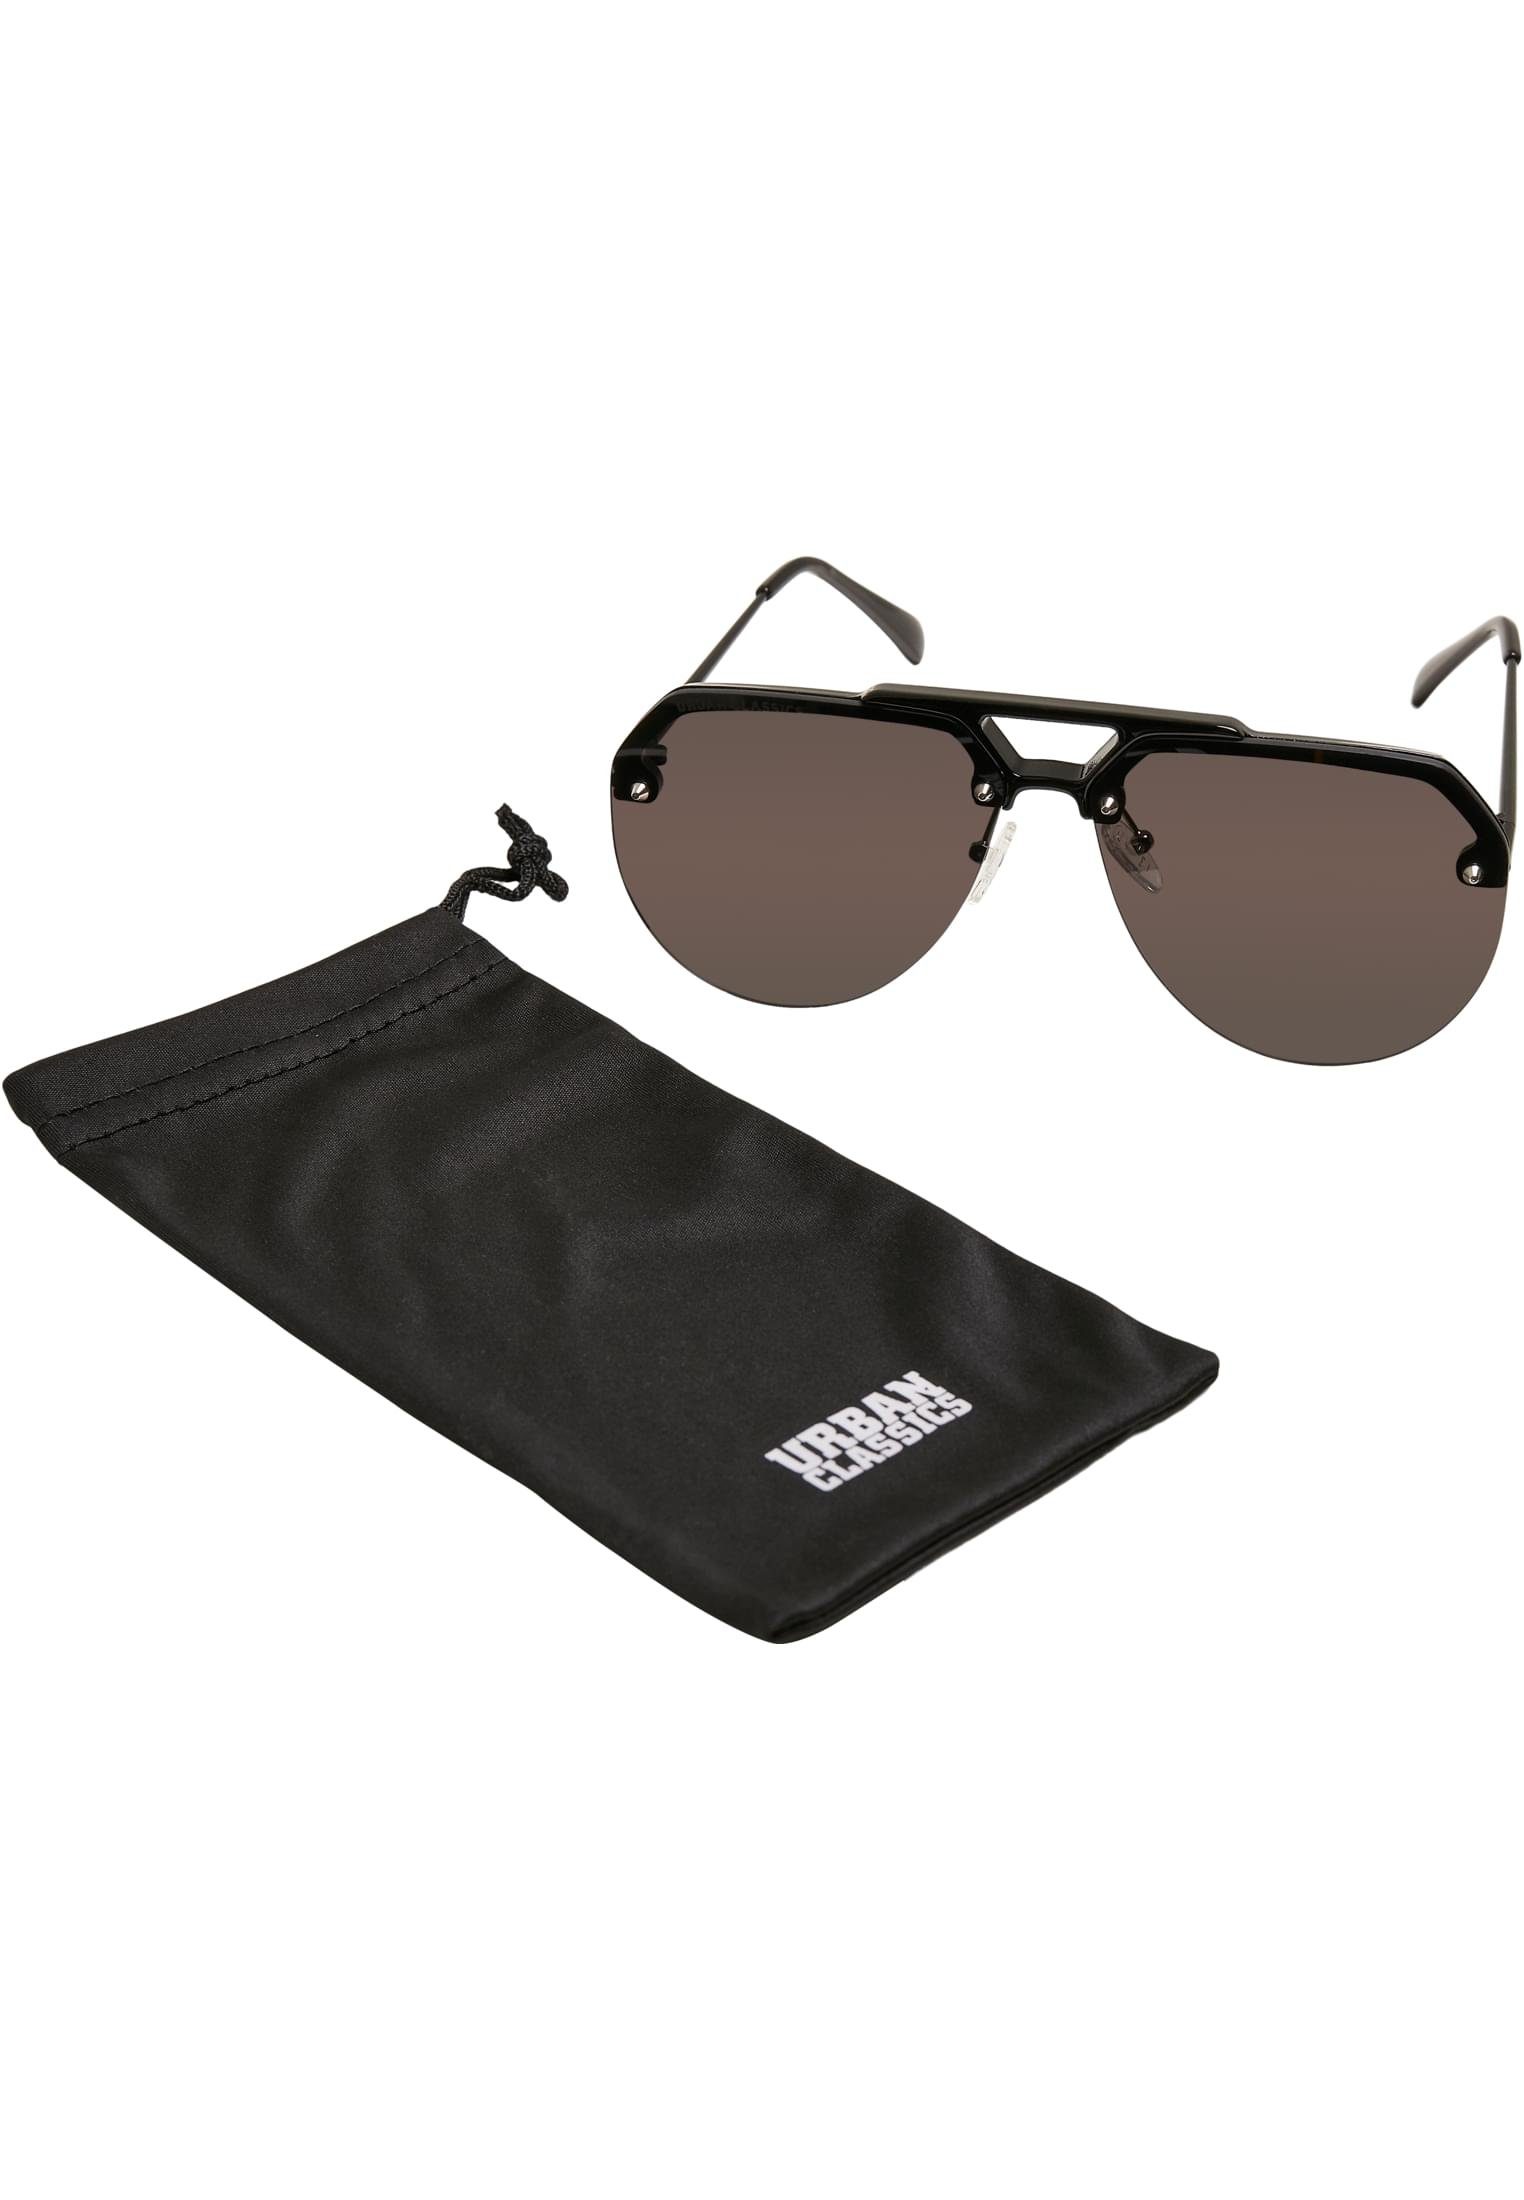 URBAN CLASSICS Sonnenbrille Unisex Sunglasses Toronto black